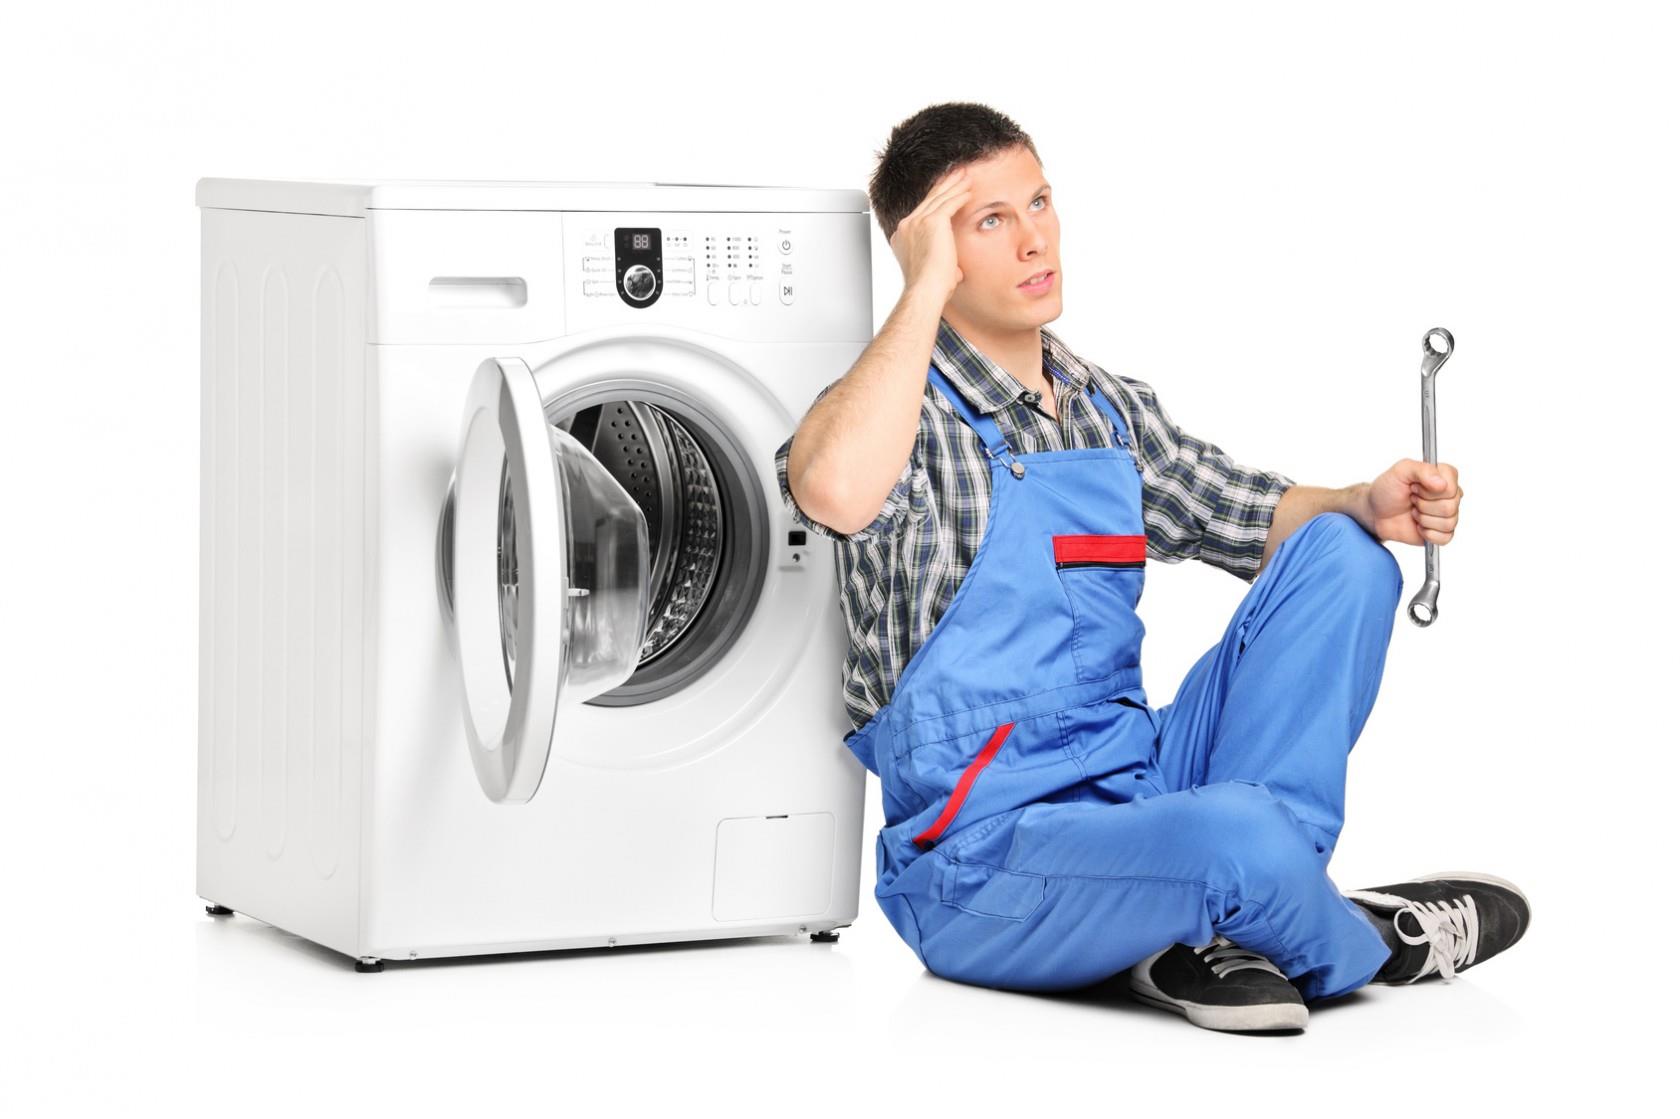 Nếu lỗi quá nặng cần gọi thợ sửa máy giặt chuyên nghiệp để họ sửa chữa kịp thời